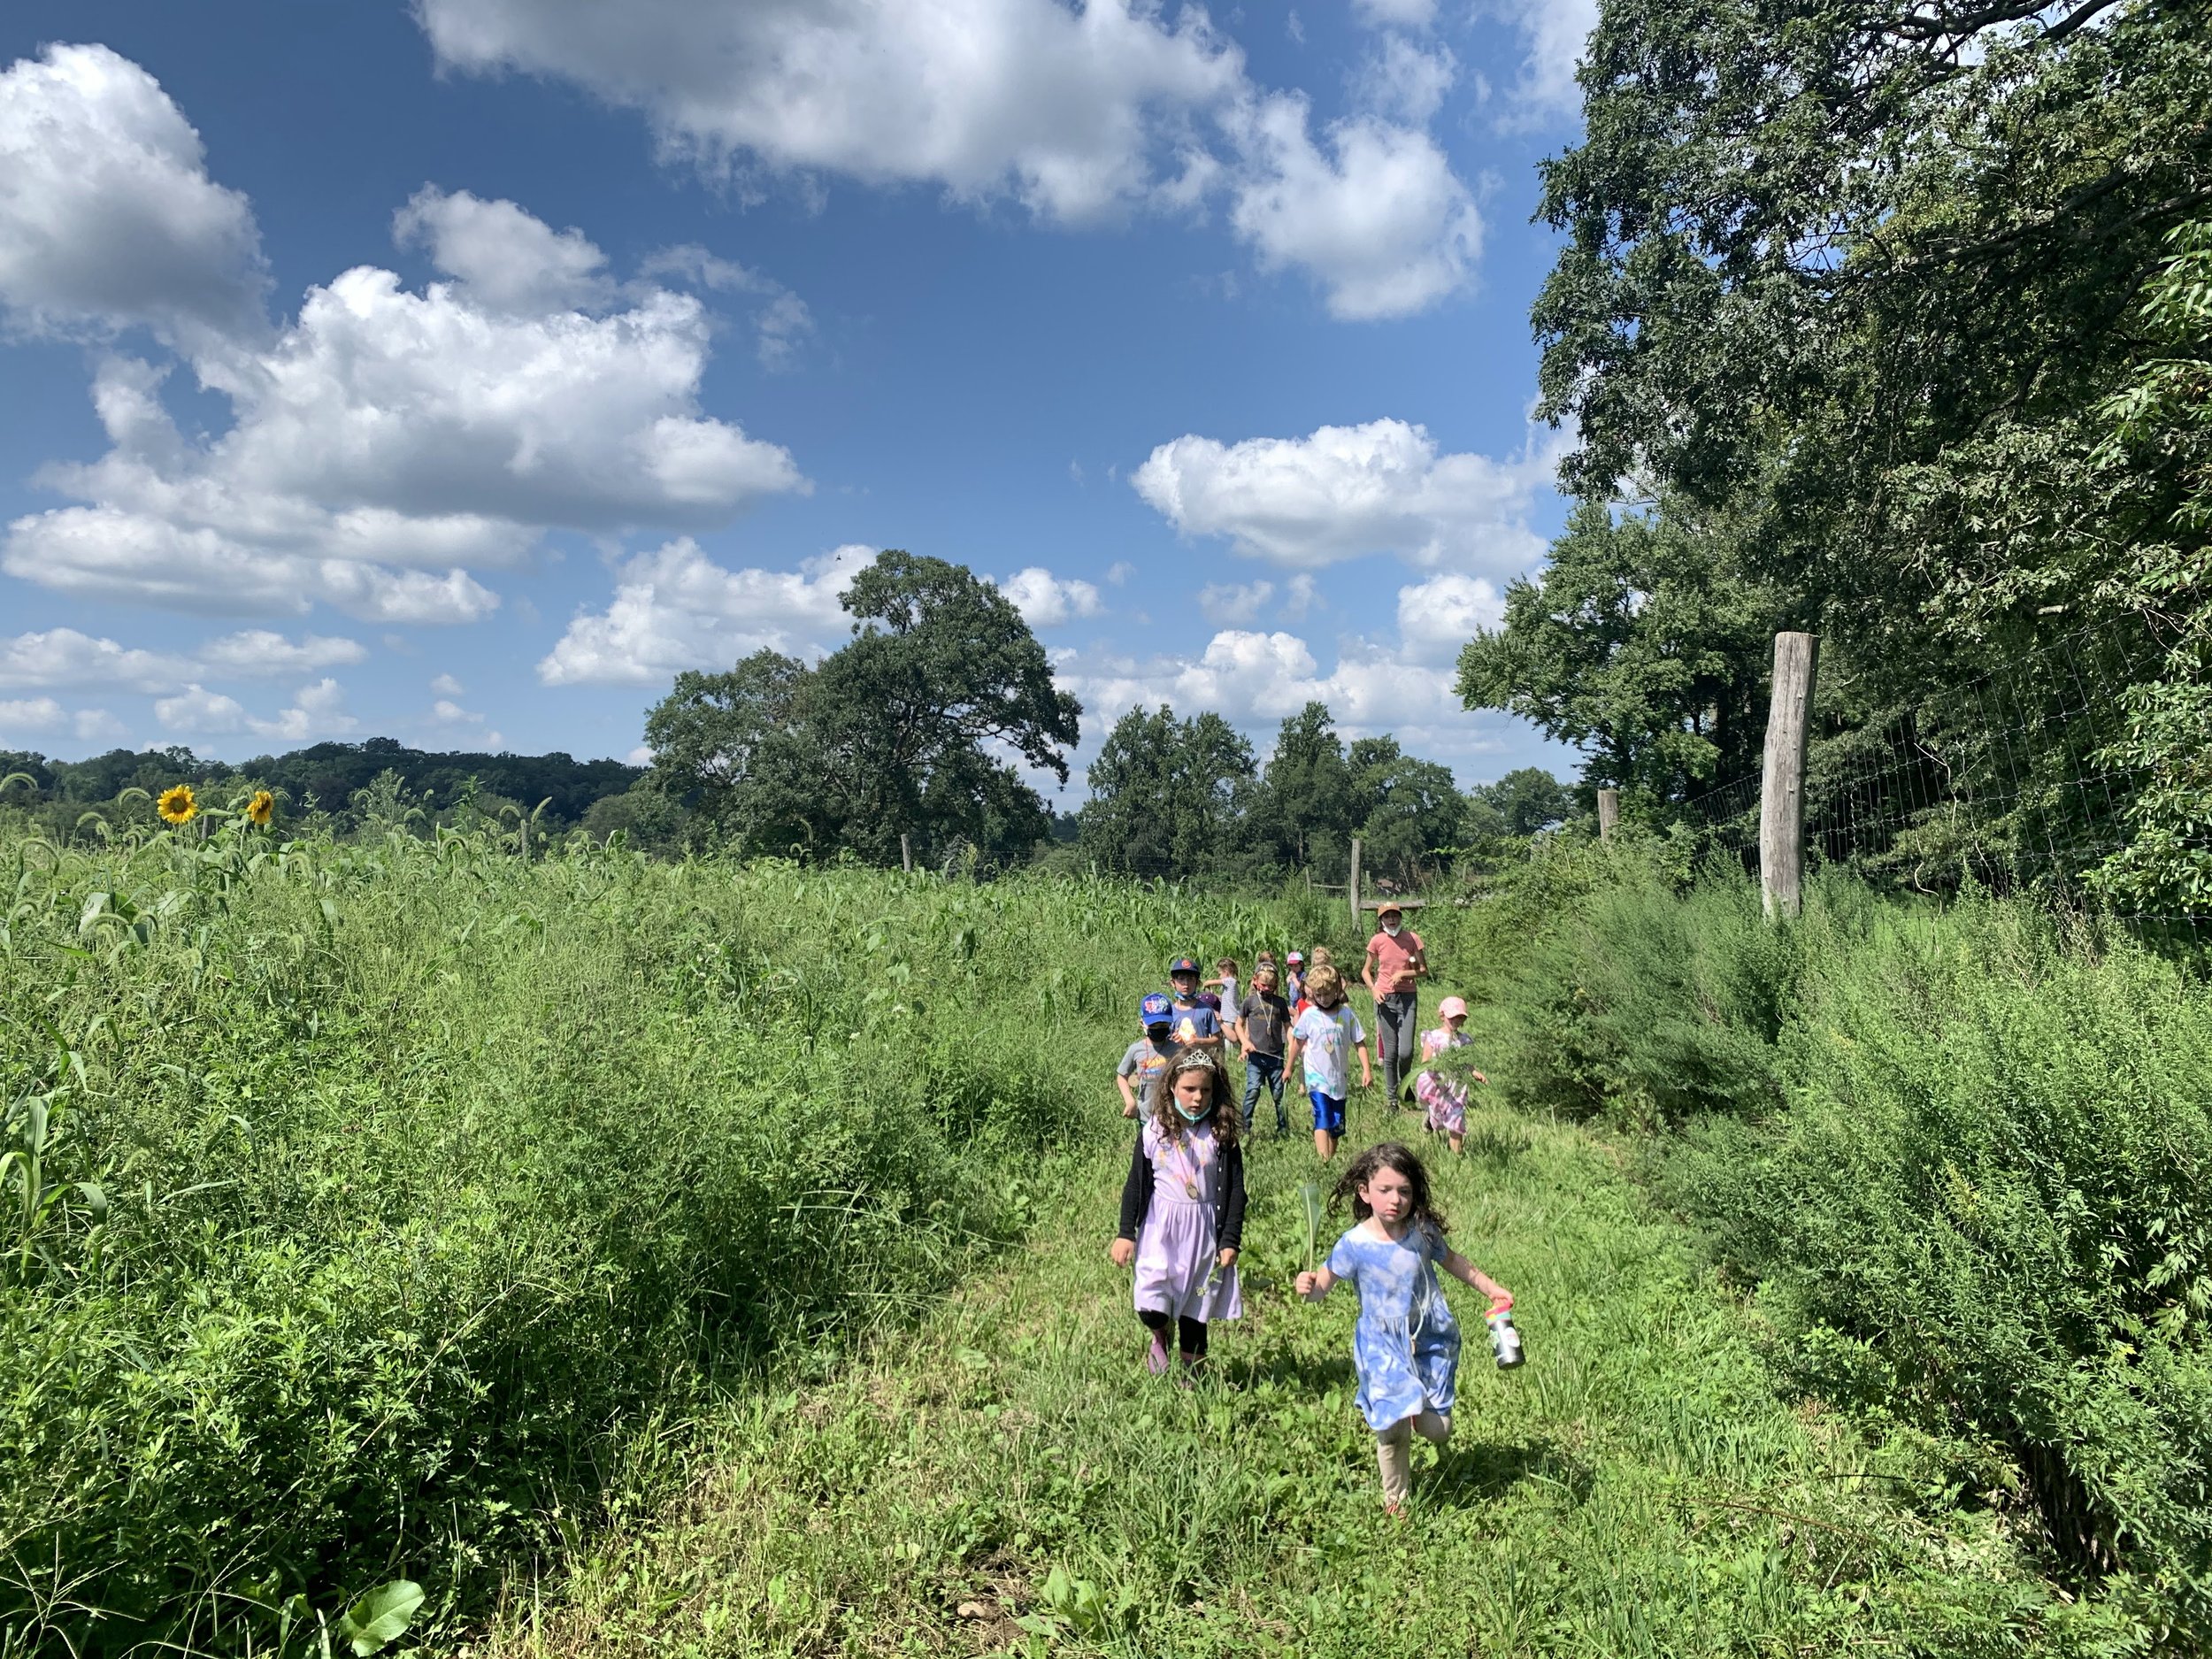  A group of children walking through a field 